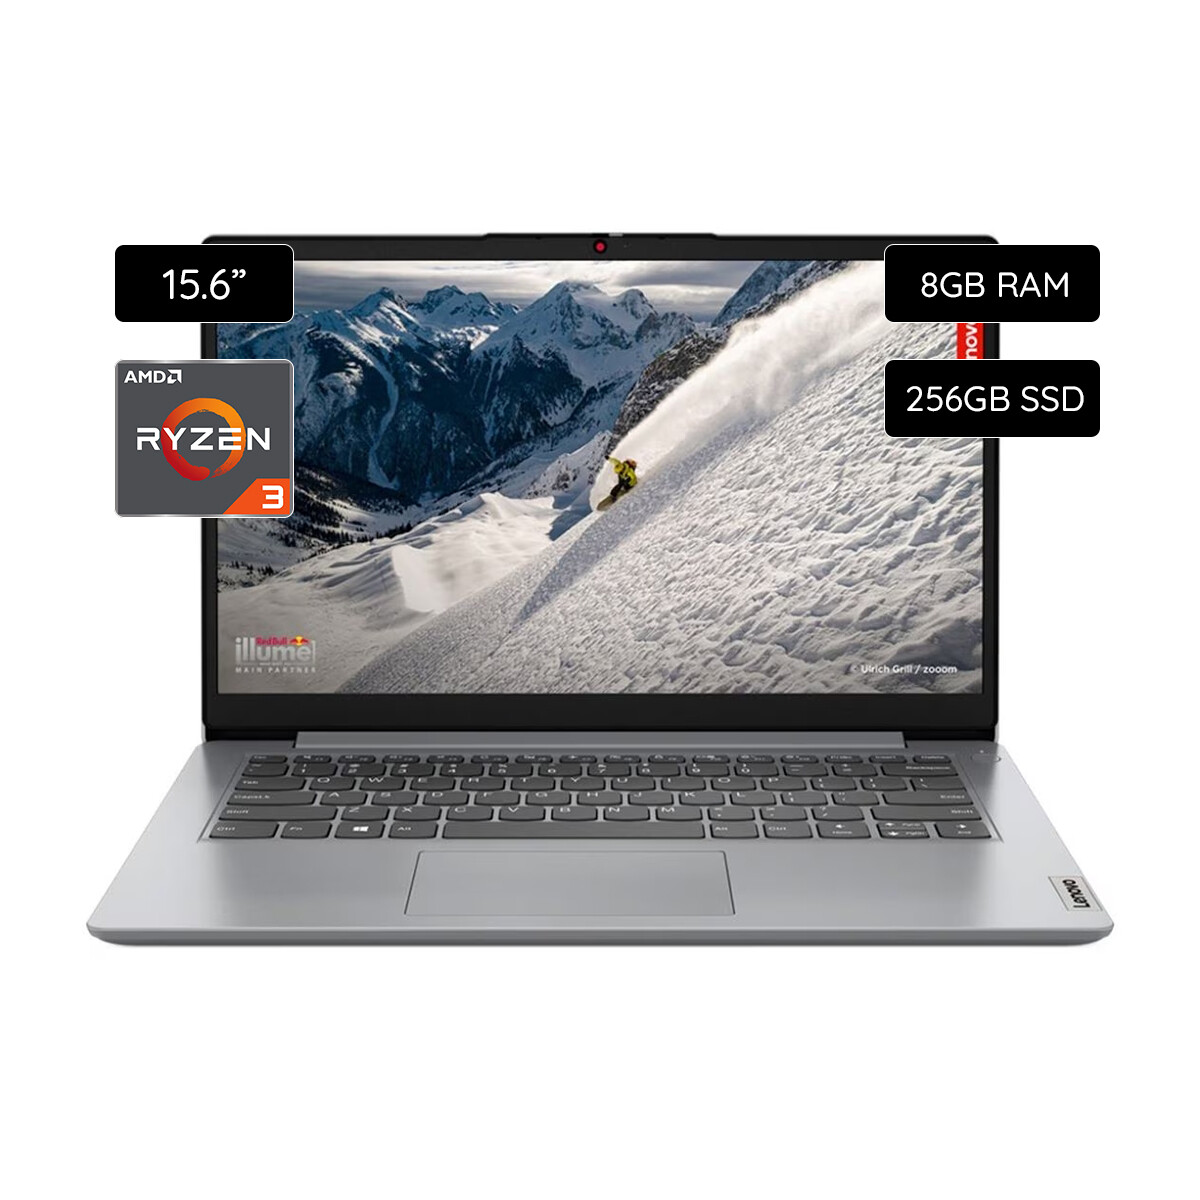 Notebook Lenovo IdeaPad 1 15.6" 256GB SSD / 8GB RAM AMD Ryzen 3 7320U - Cloud grey 